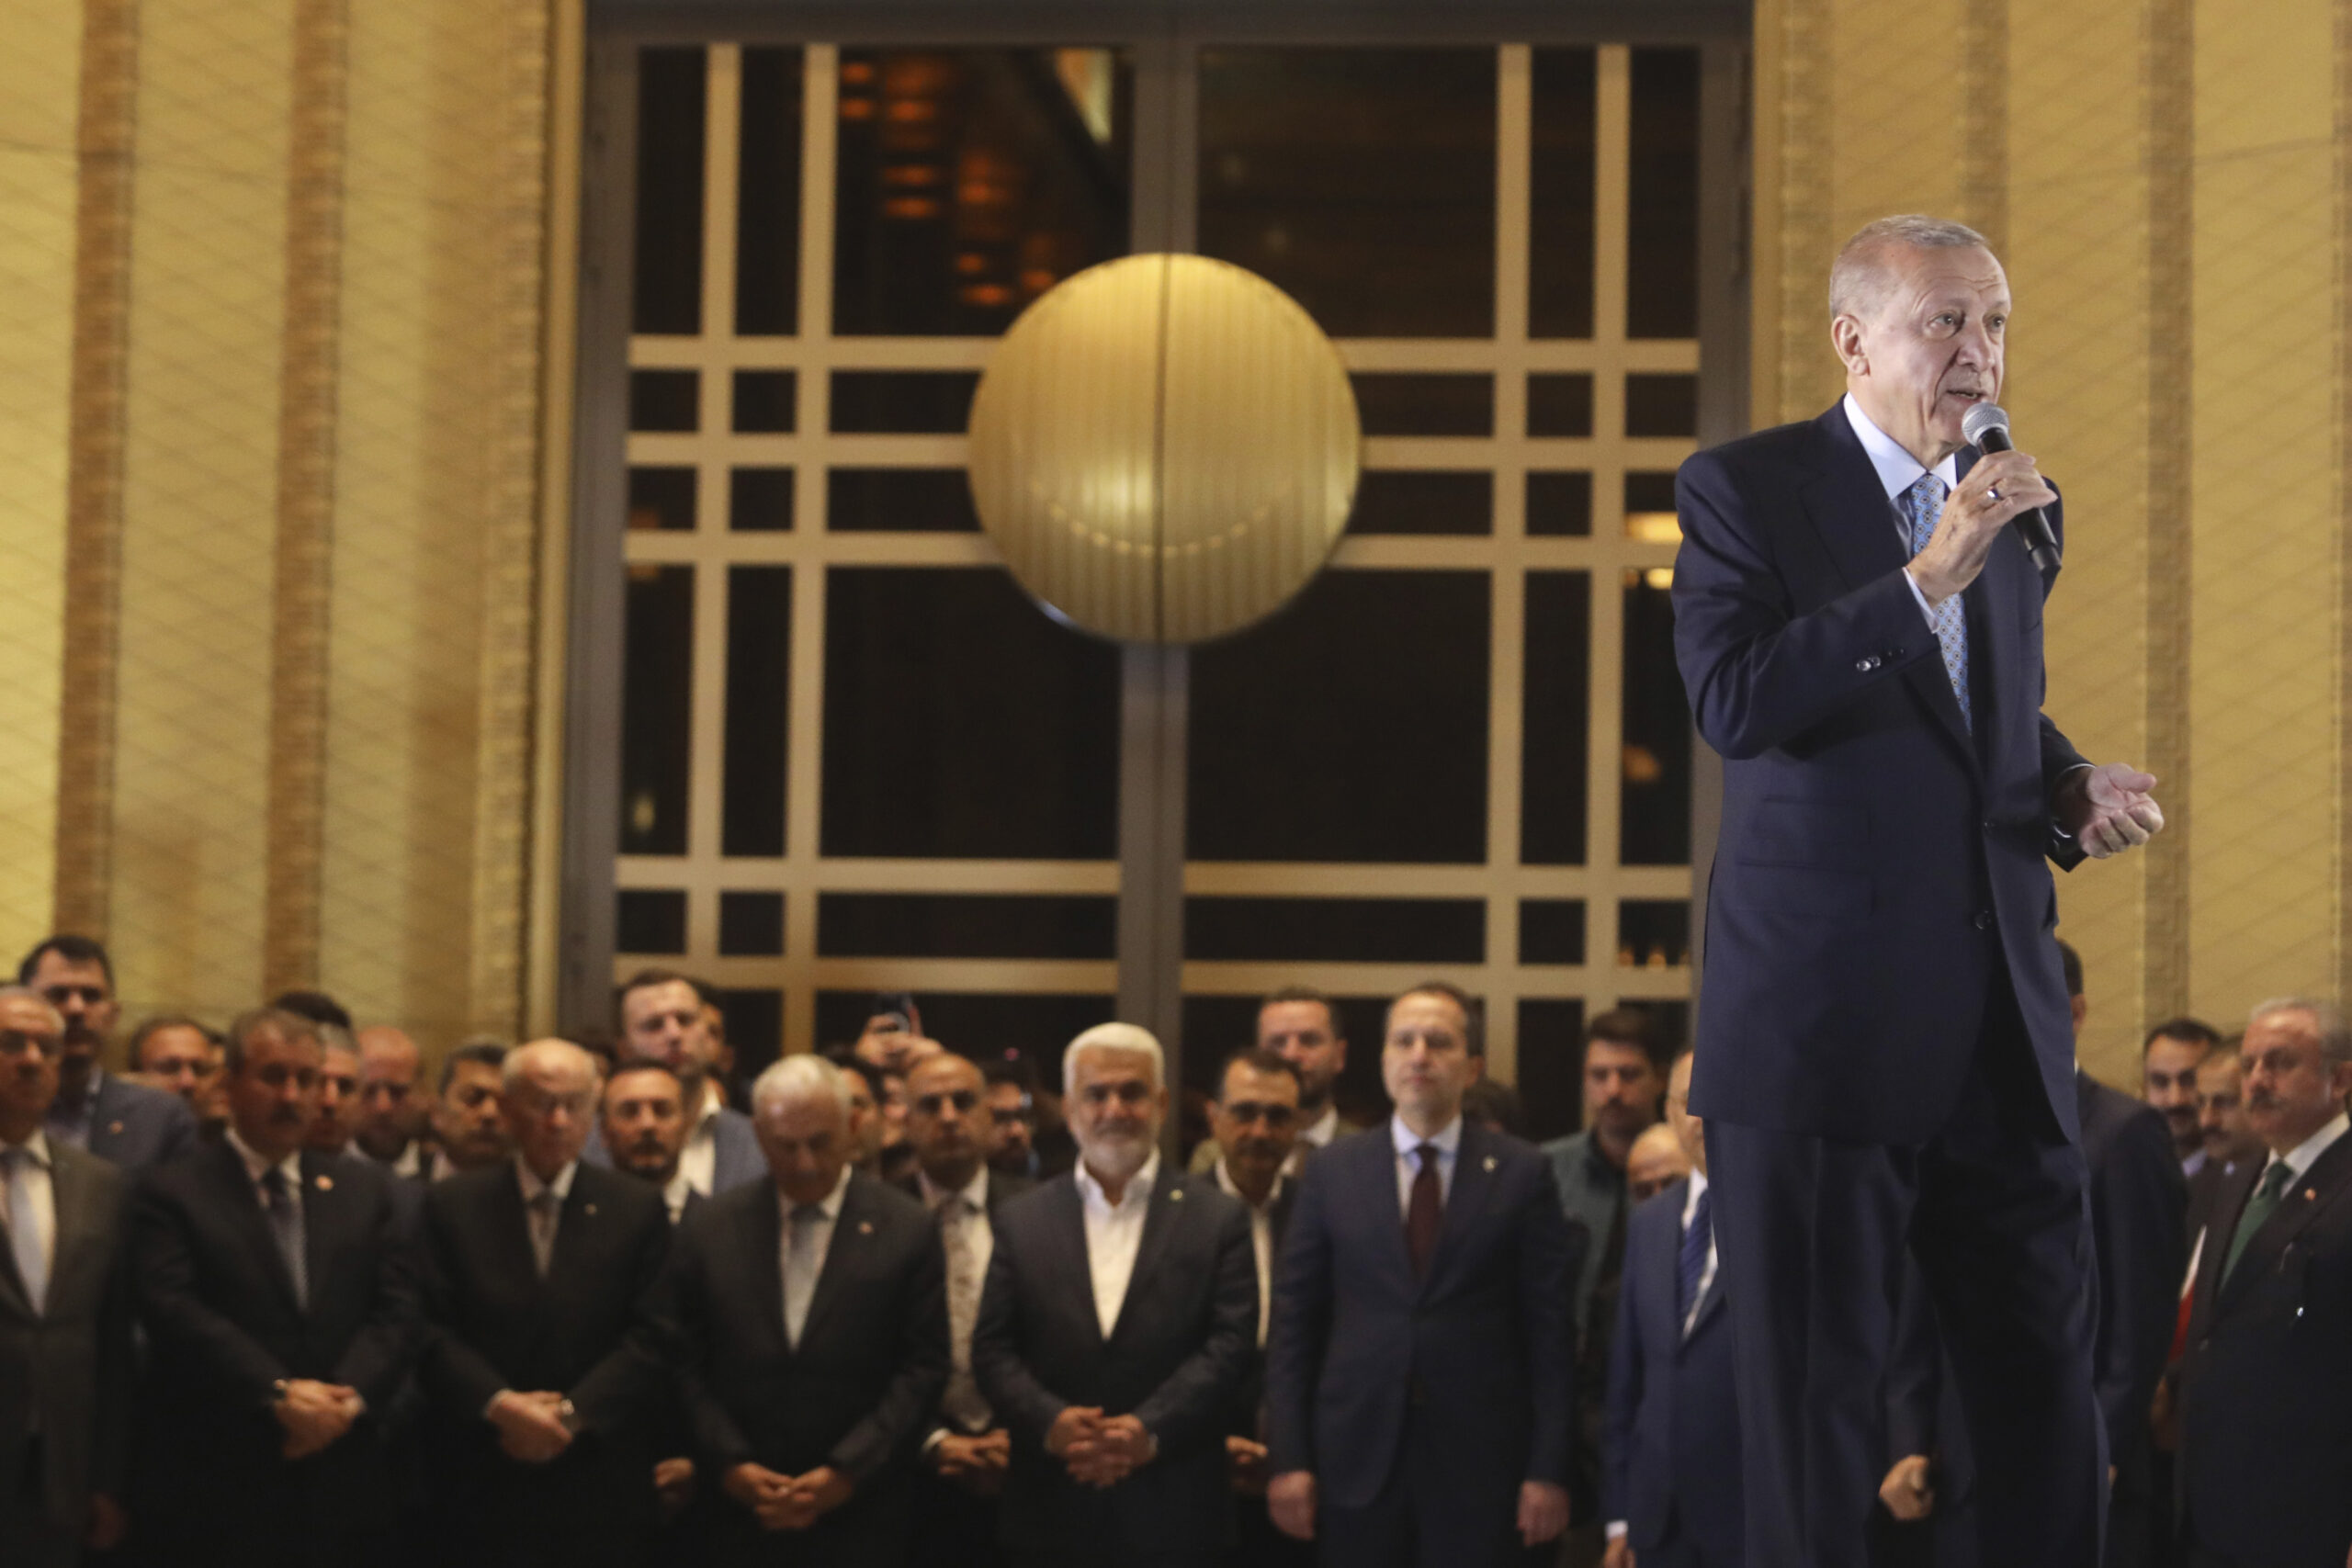 Recep Tayyip Erdogan, Präsident der Türkei und Präsidentschaftskandidat der Volksallianz, spricht im Präsidentenpalast in Ankara. Der türkische Staatschef Recep Tayyip Erdogan hat sich noch vor Auszählung aller Stimmen zum Sieger der Präsidentenwahl erklärt.